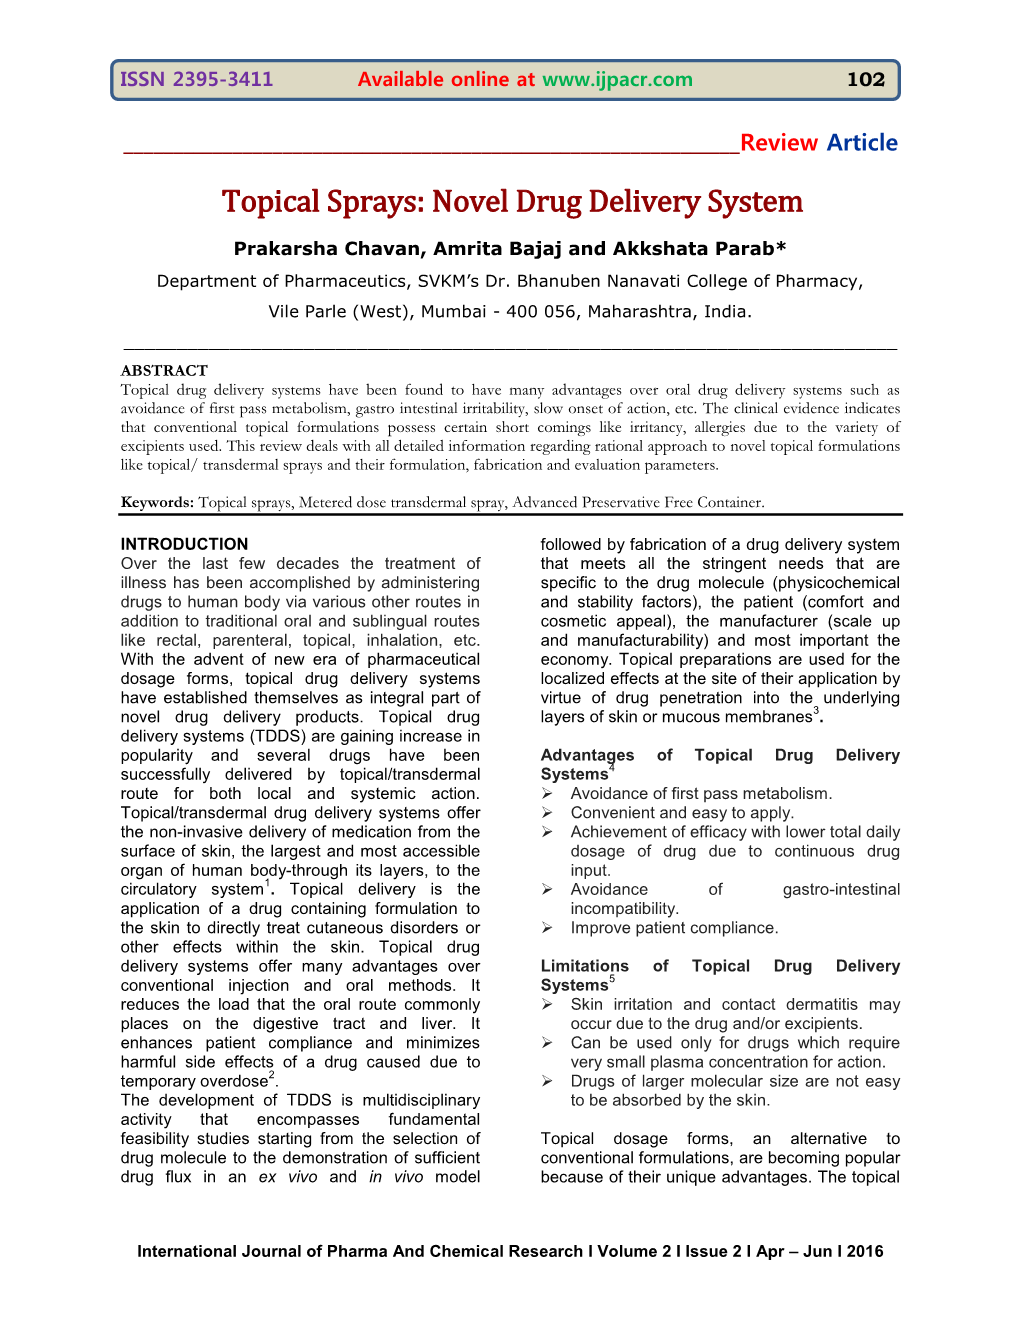 Topical Sprays: Novel Drug Delivery System